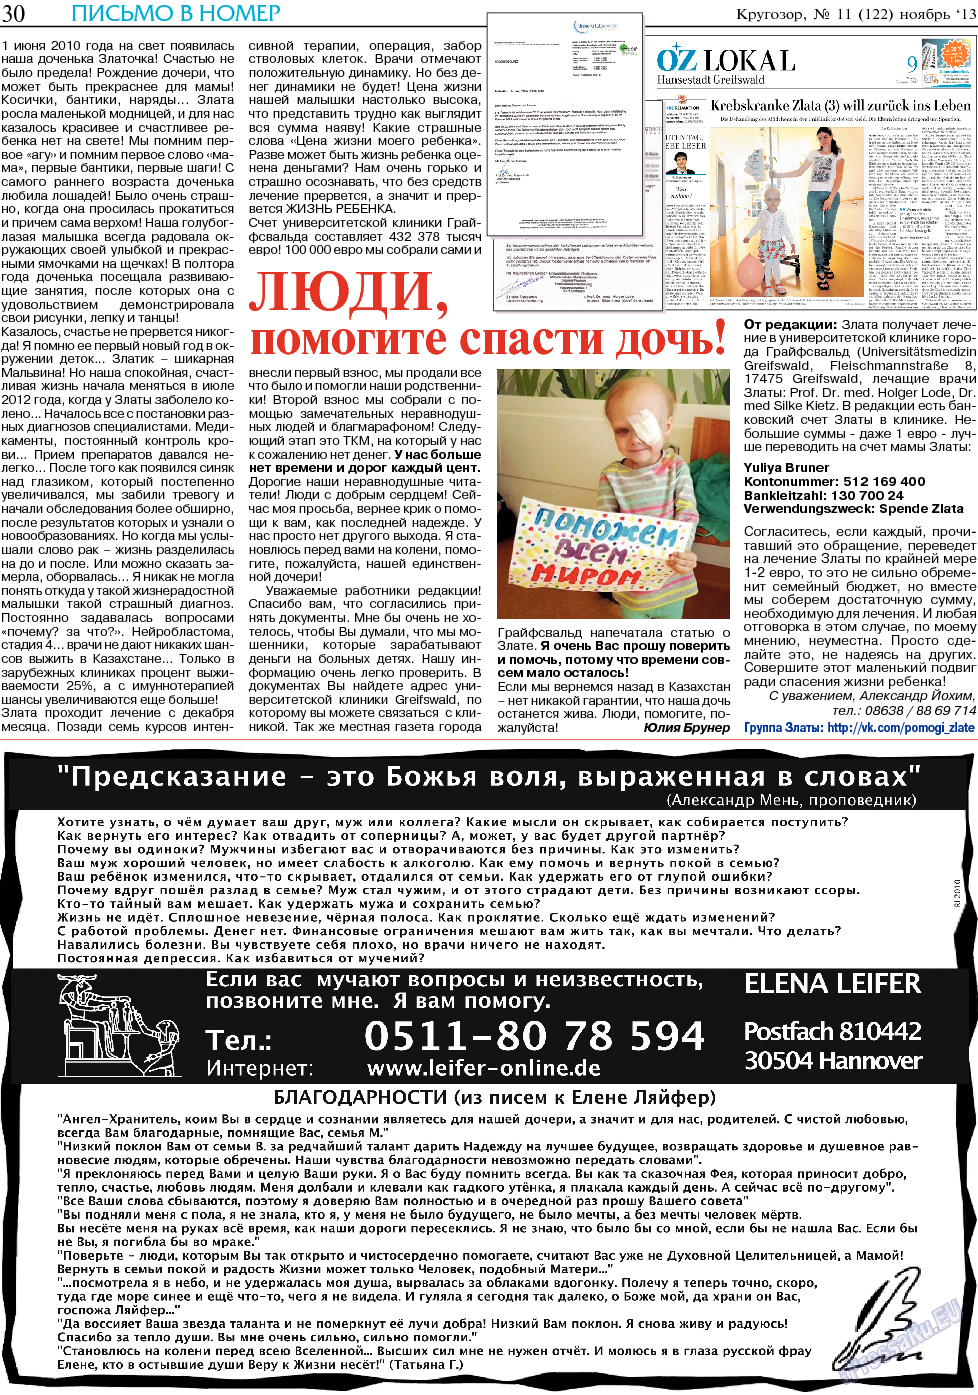 Кругозор (газета). 2013 год, номер 11, стр. 30